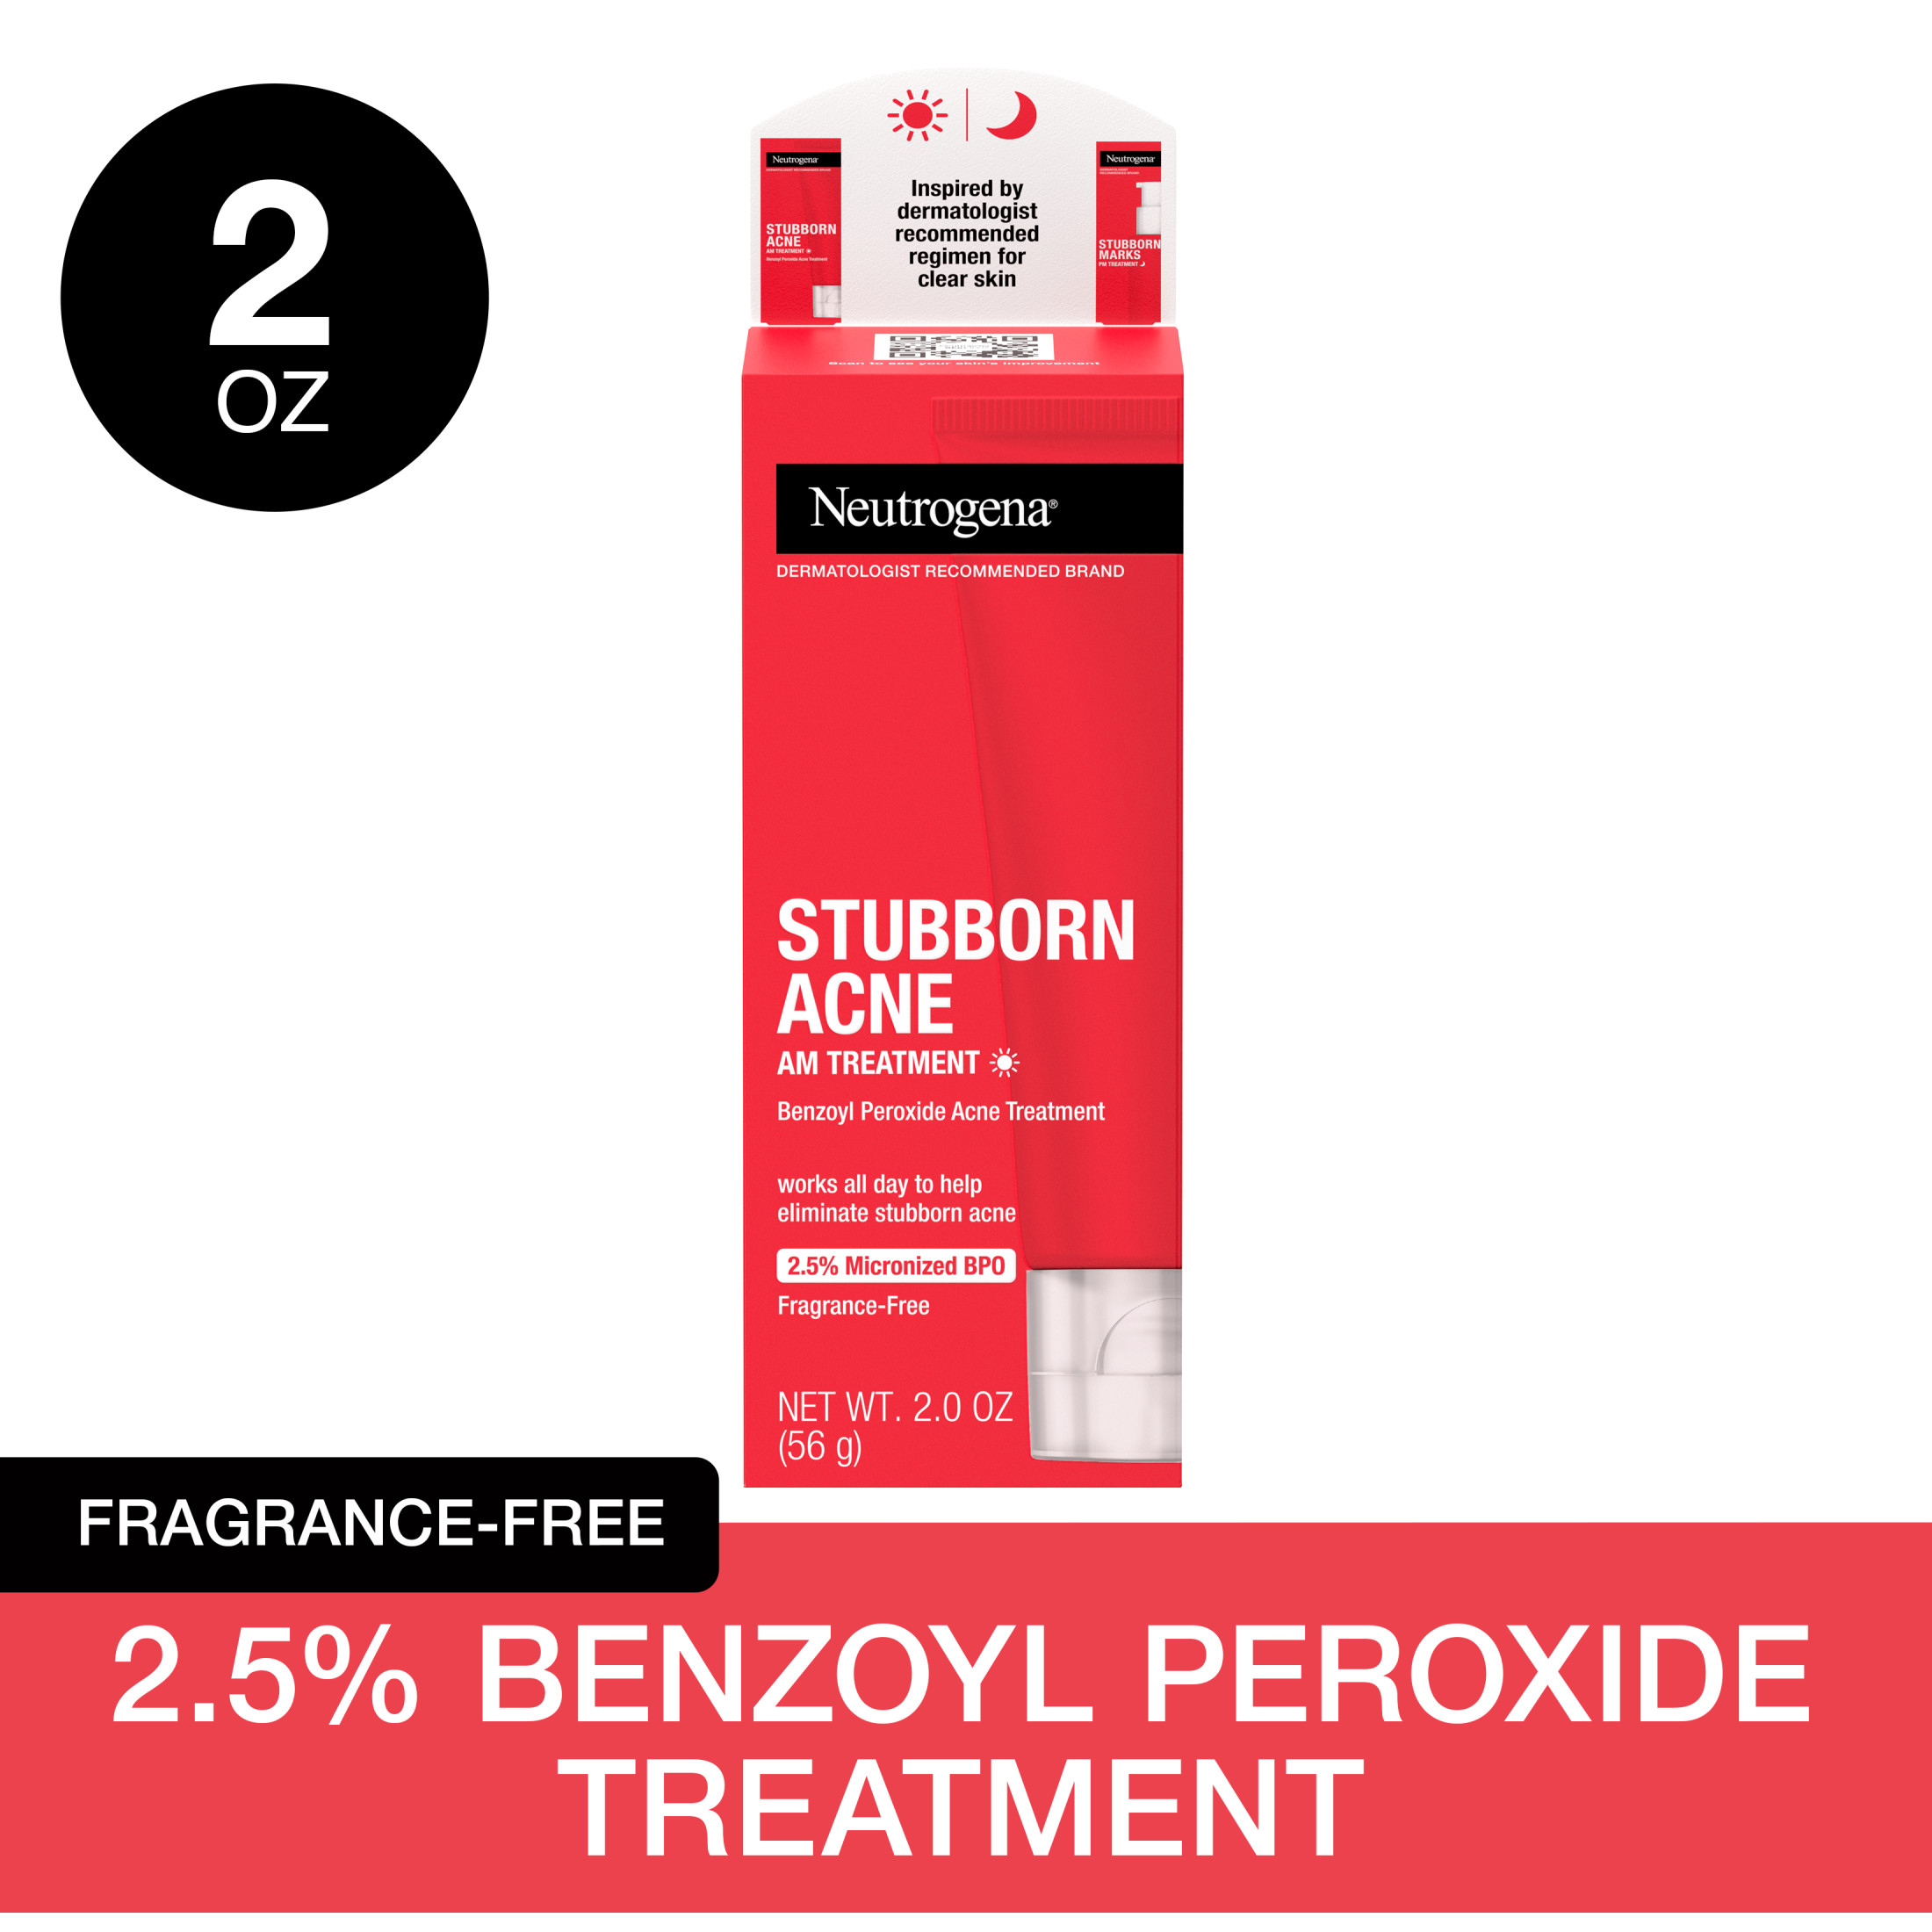 Neutrogena Stubborn Acne AM Treatment with Benzoyl Peroxide, 2.0 oz - image 1 of 7